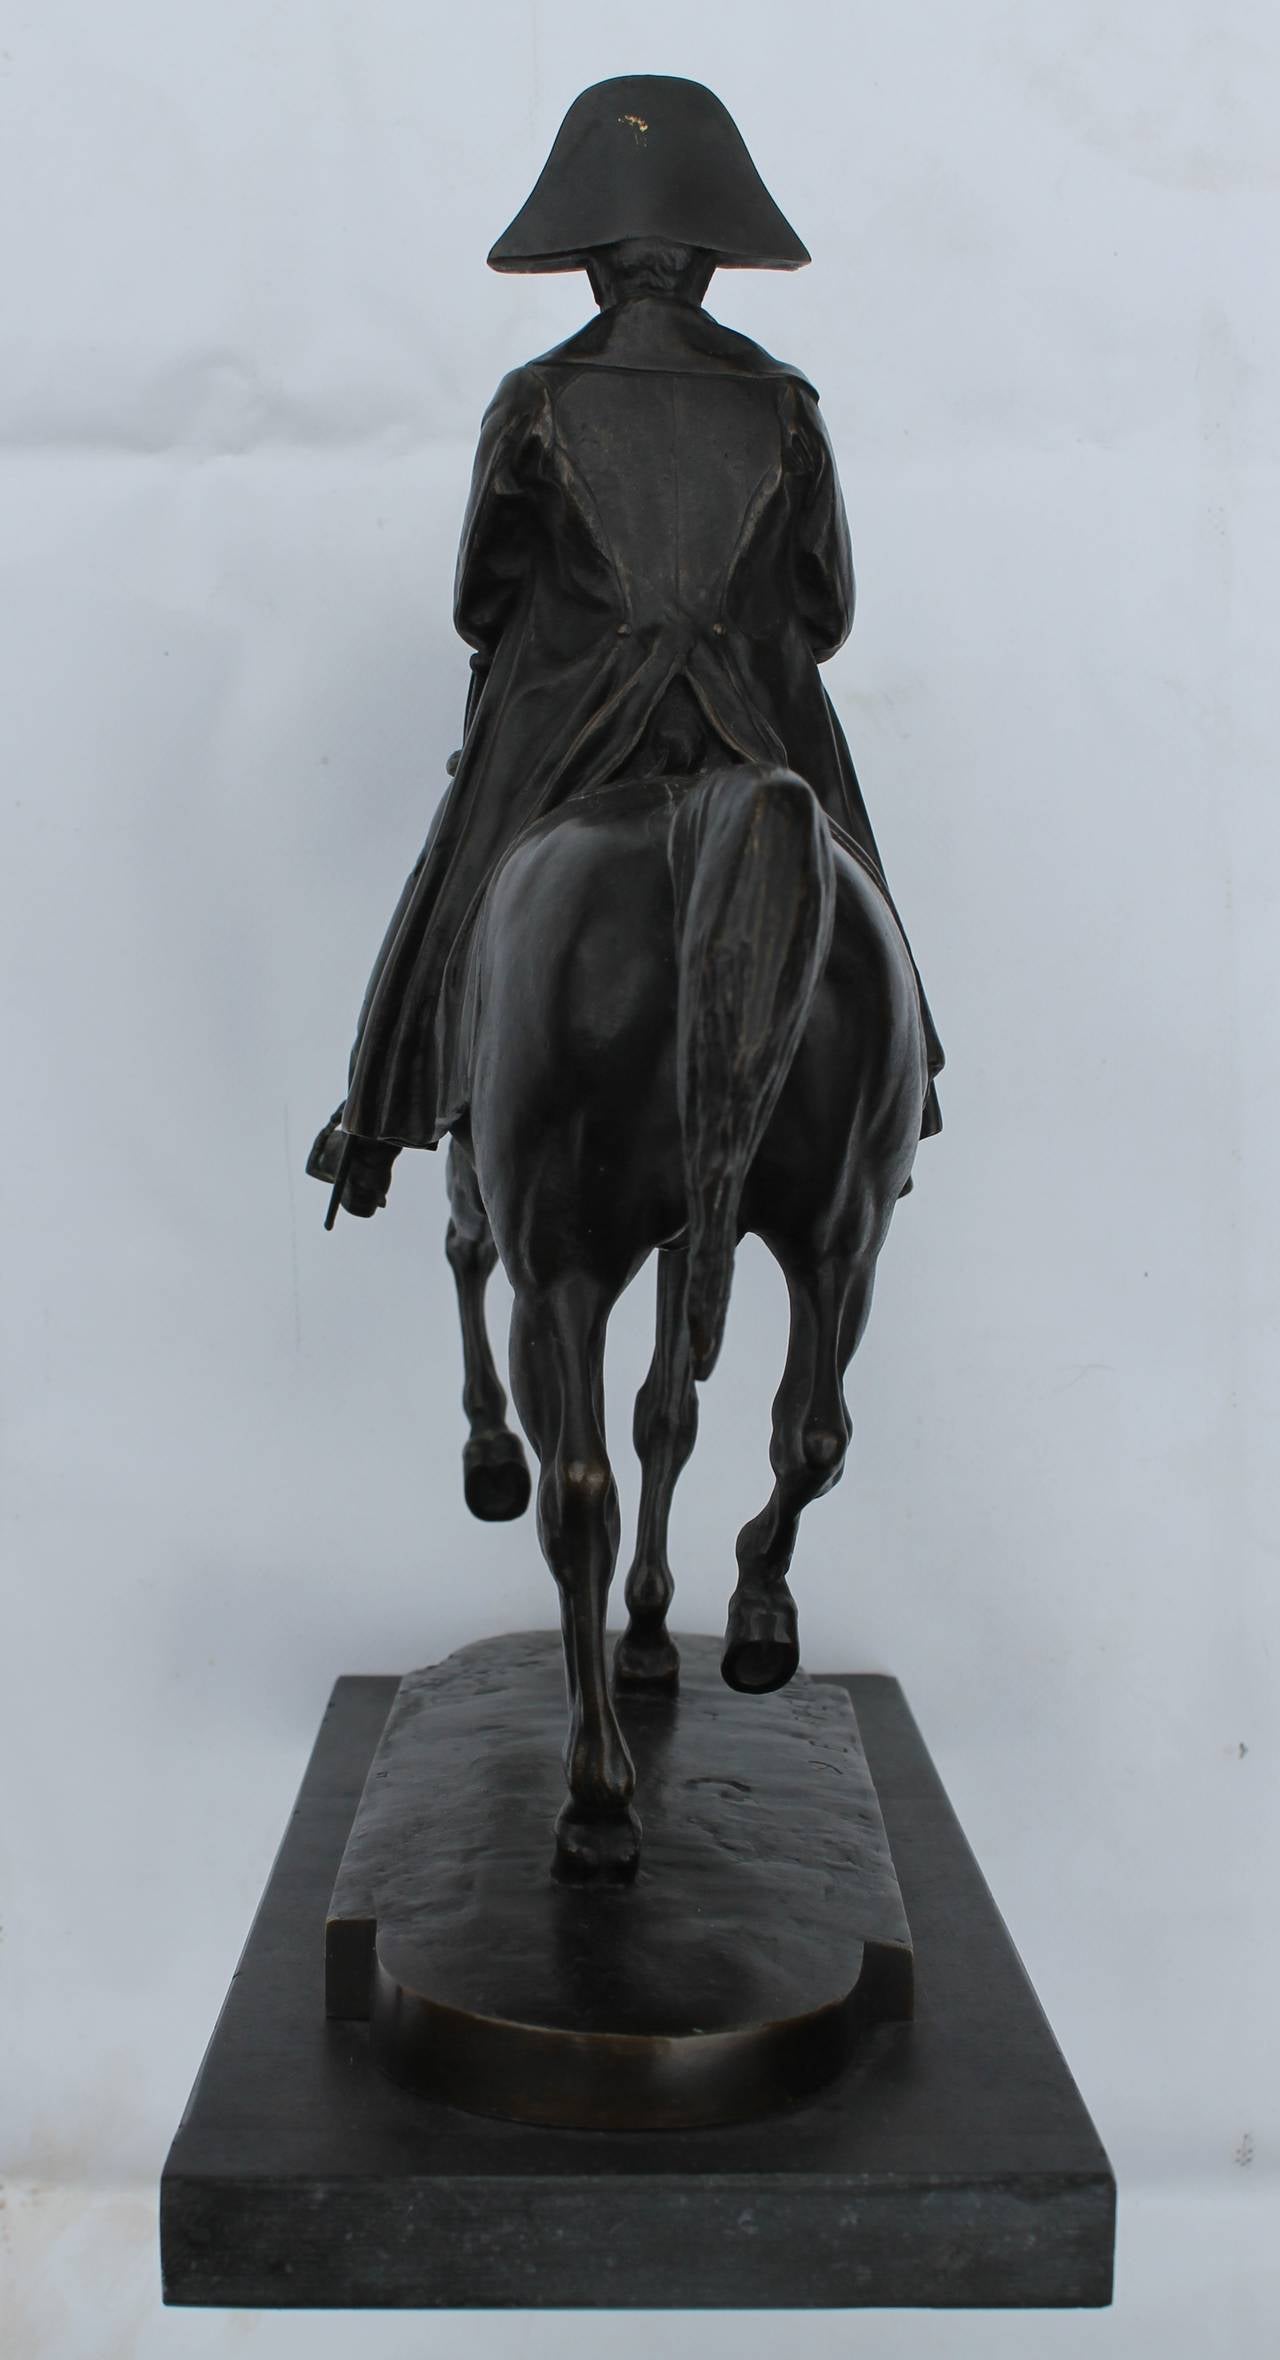 French Napoleon Bonaparte on Horseback by Emmanuel Fremiet